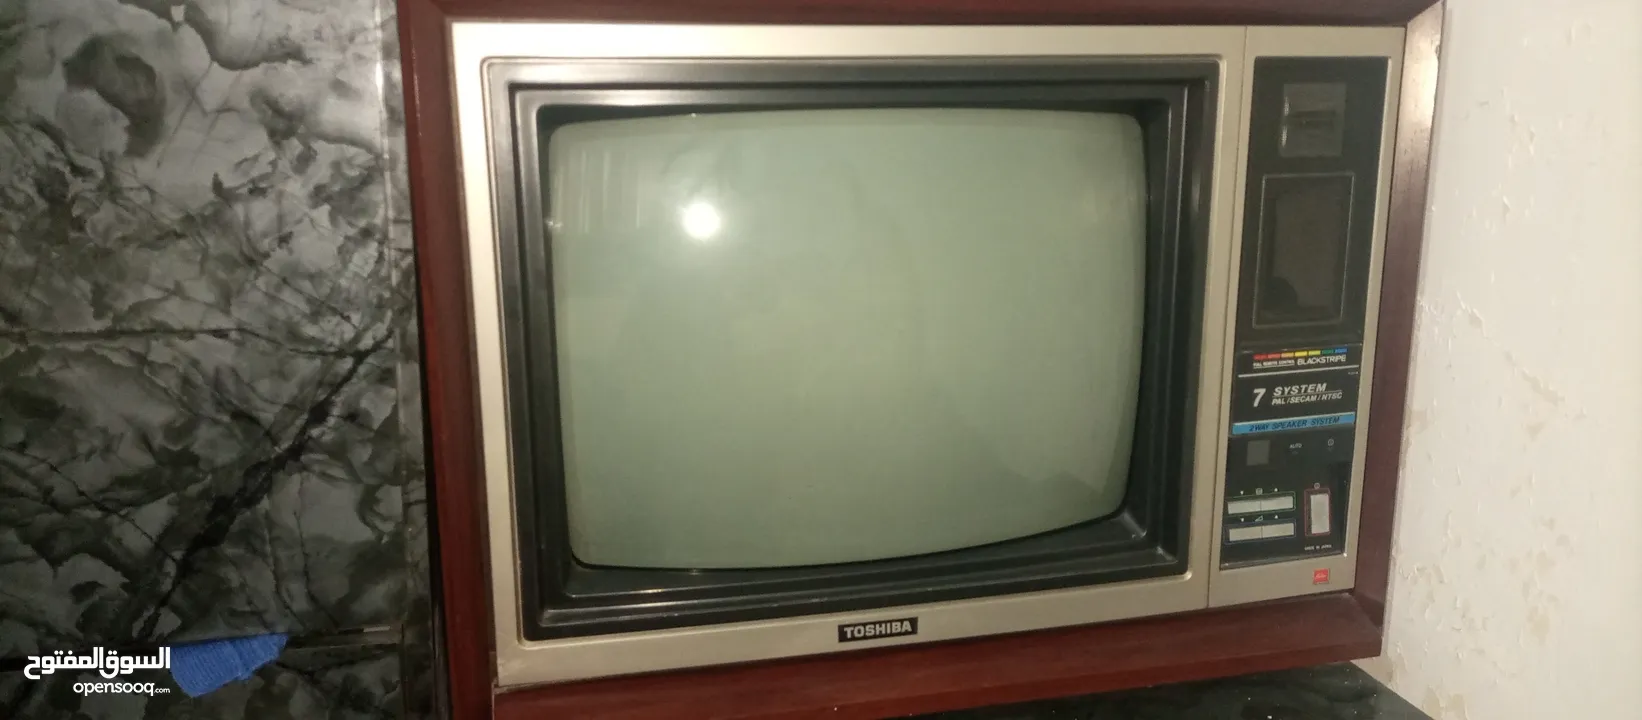 تلفزيون توشيبا للبيع : تلفزيون - شاشات توشيبا أخرى : إربد بيت راس  (227808382)